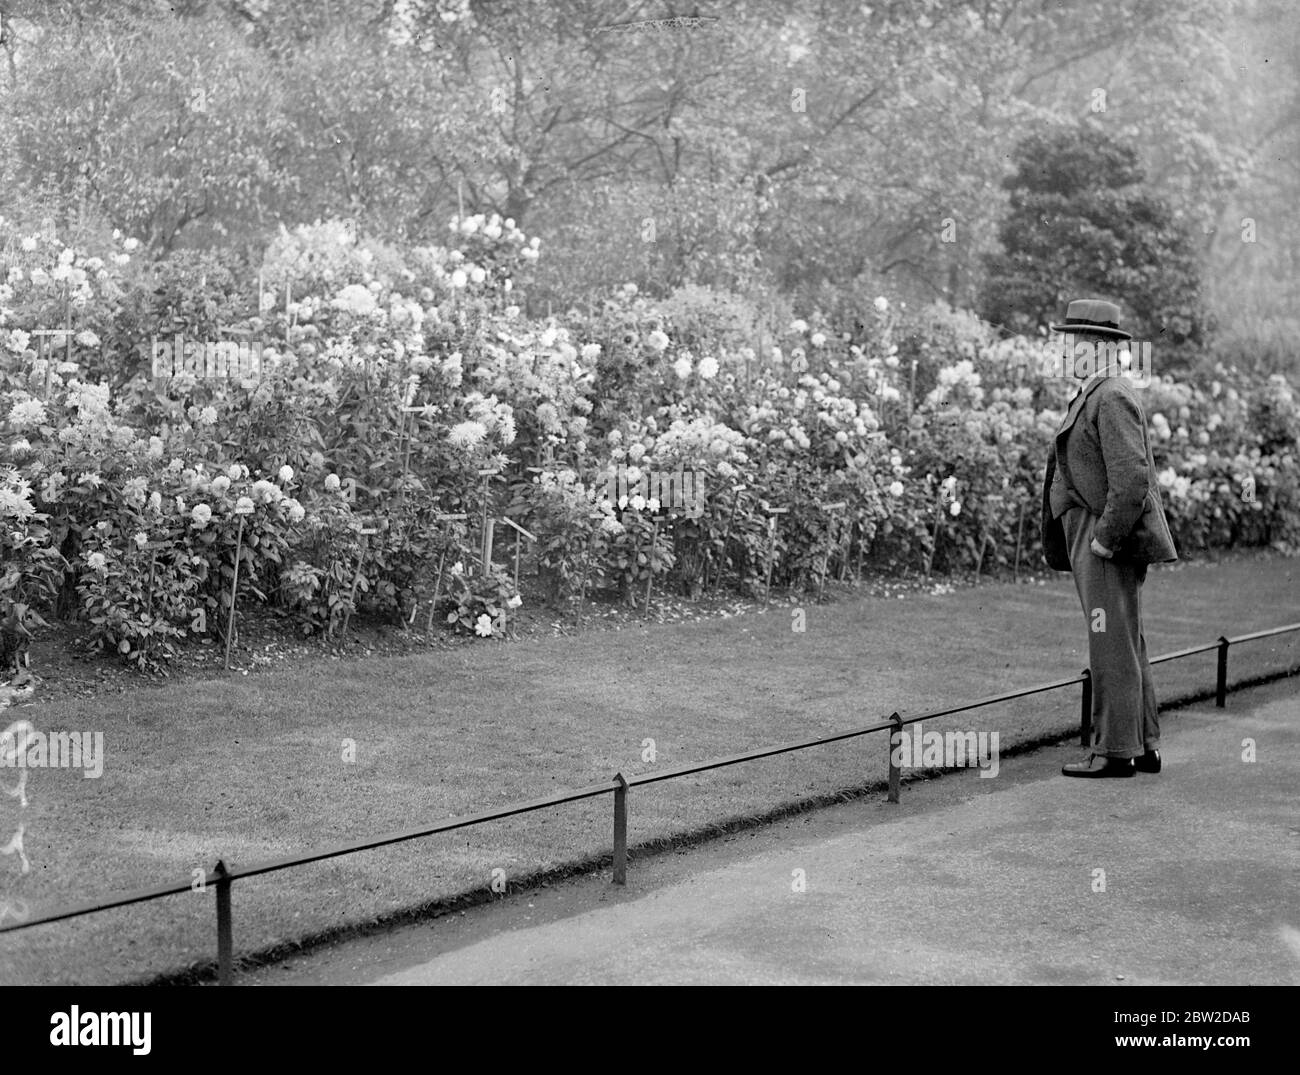 Sir Thomas Inskip, Minister für die Koordinierung der Verteidigung, vergisst Probleme der tödliche Waffen und Flugzeuge, um die großartige Show der Dahlien zu bewundern, als er durch den St. James's Park auf dem Weg nach Musty Whitehall geht. 22. Oktober 1938 Stockfoto